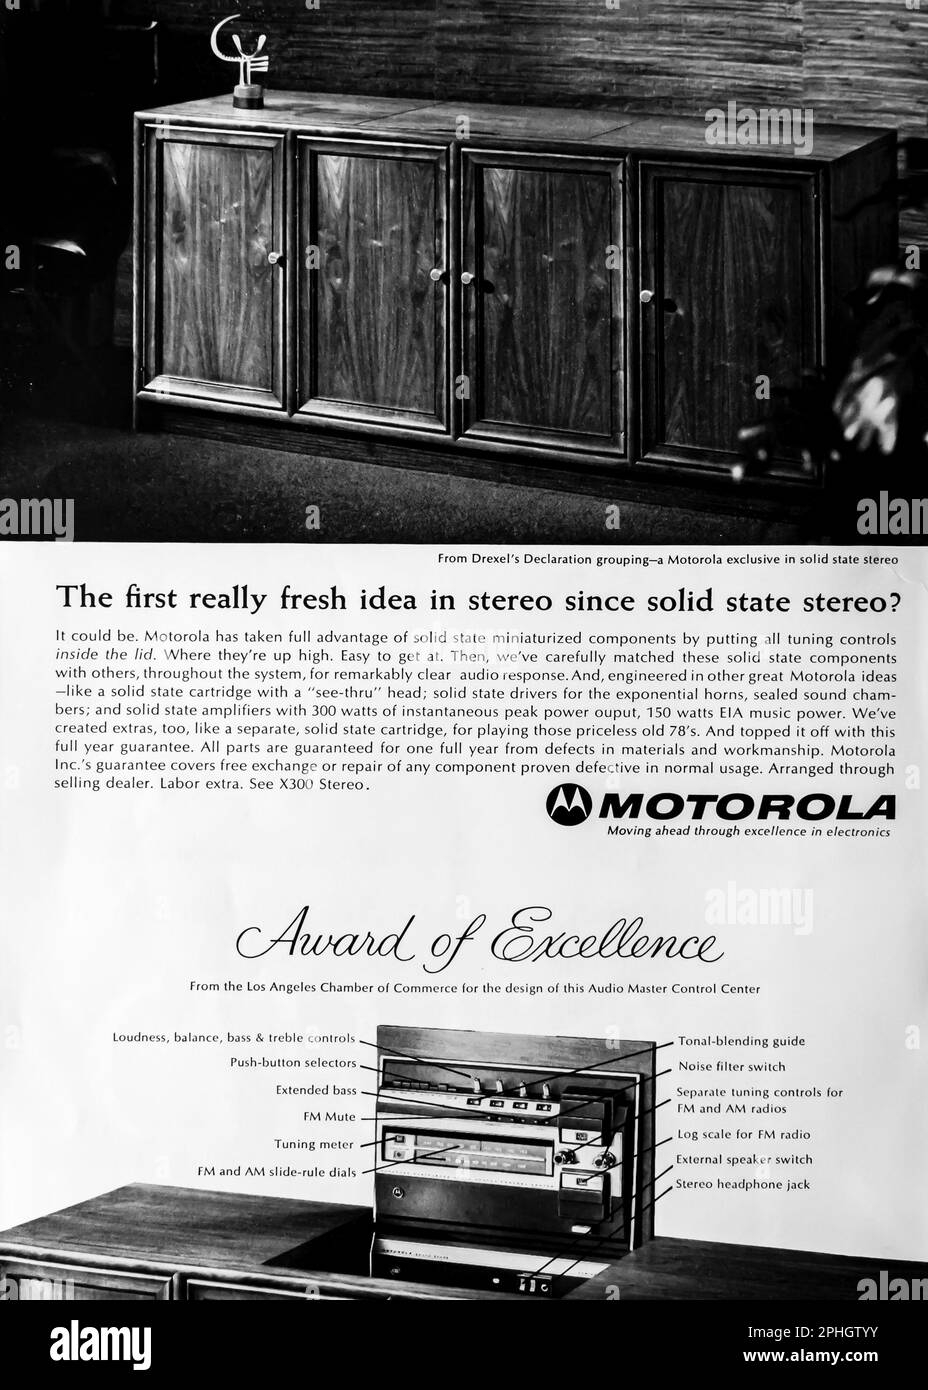 Annuncio del Motorola Audio Master Control Center in una rivista natgeo settembre 1966 Foto Stock